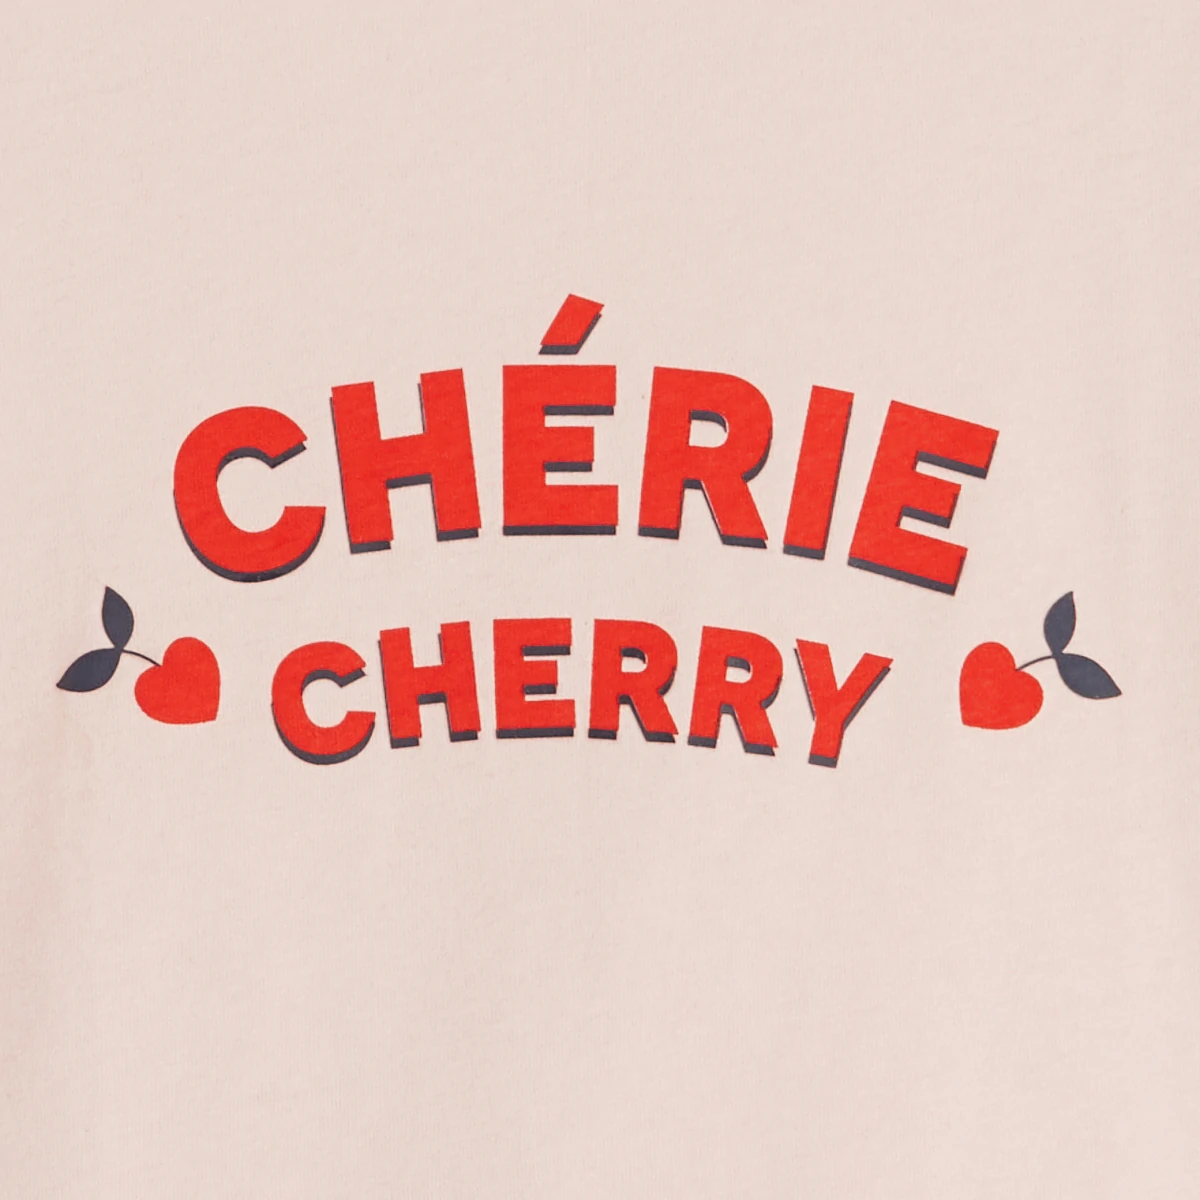 T-shirt manches courtes à message CHERIE CHERRY